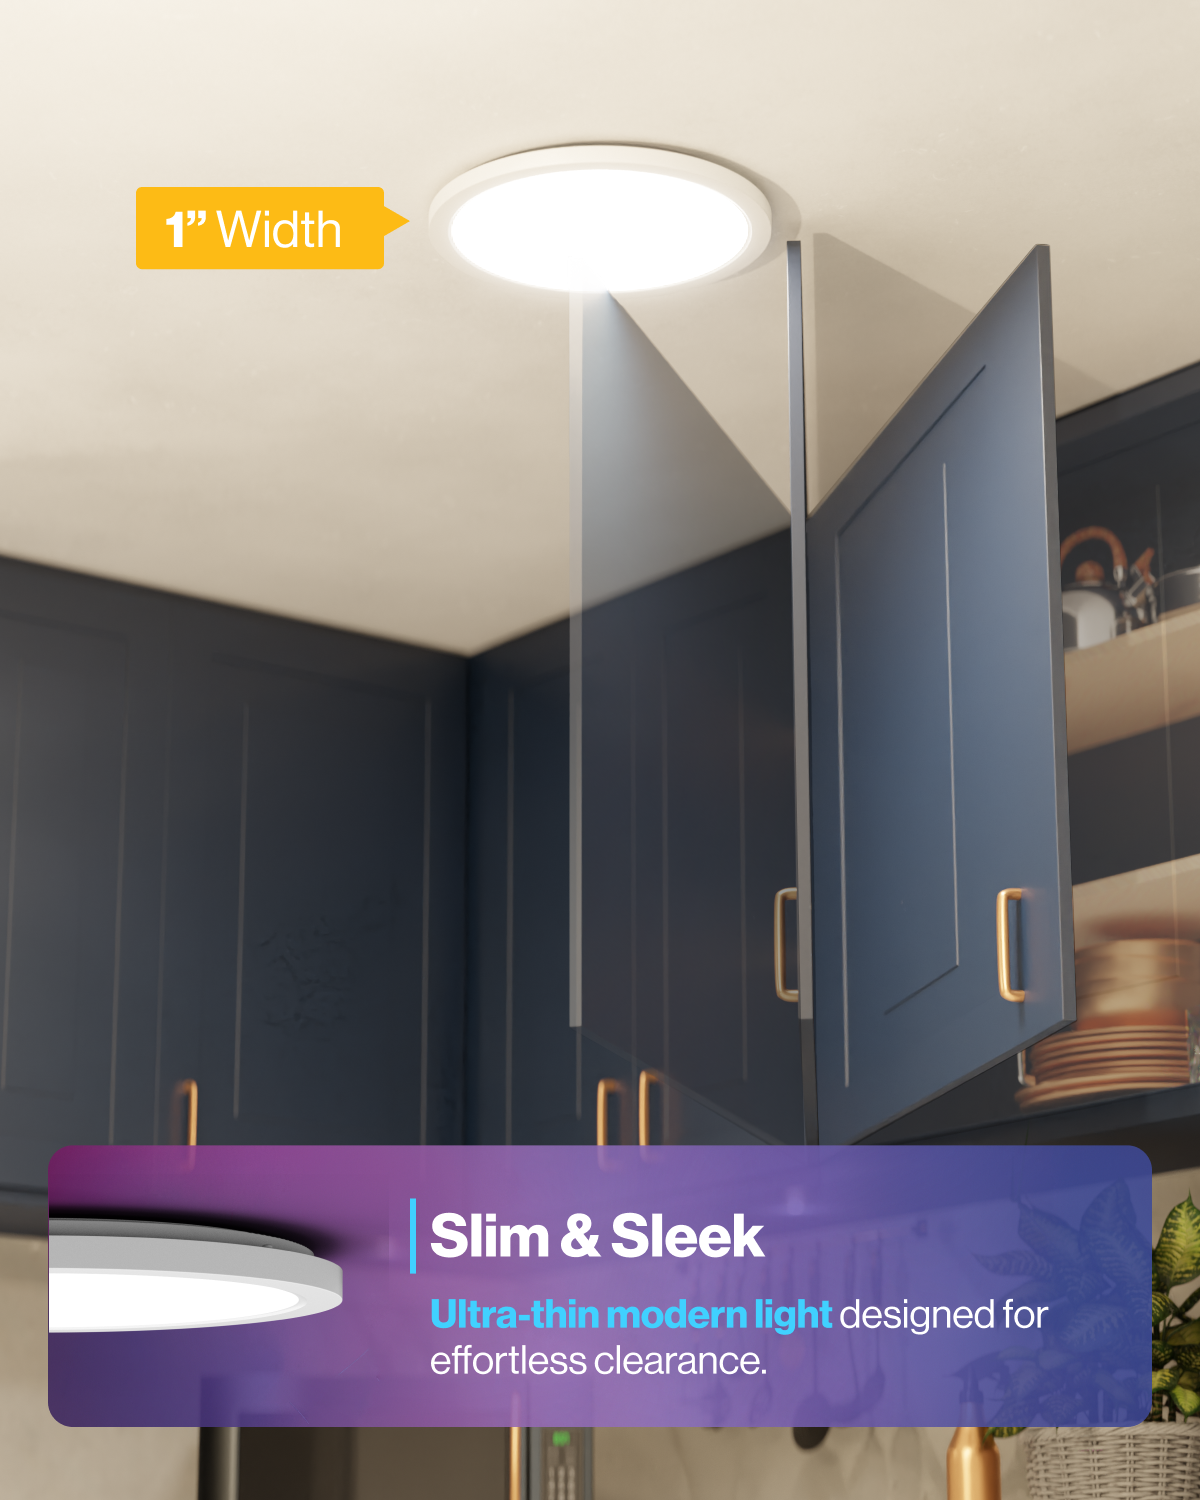 Sunco Lighting 13" Ultra-Thin & Modern Smart Ceiling Light Slim & Sleek Design Provides Effortless Ceiling Clearance